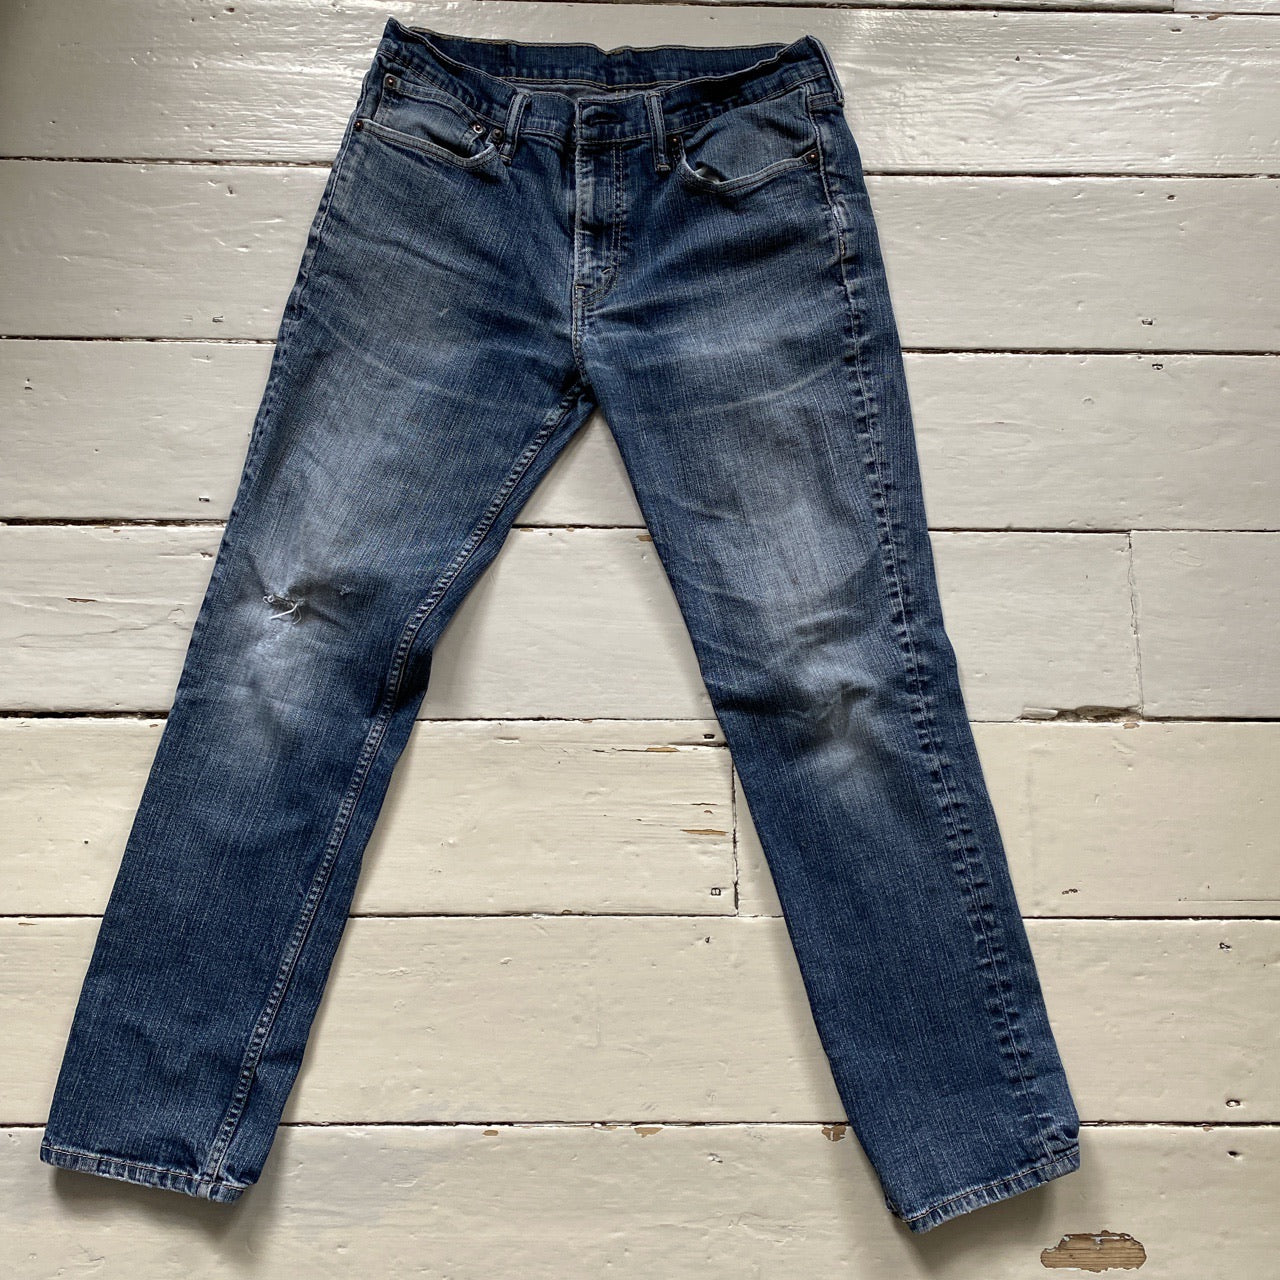 Levis 511 Light Blue Jeans (34/29)